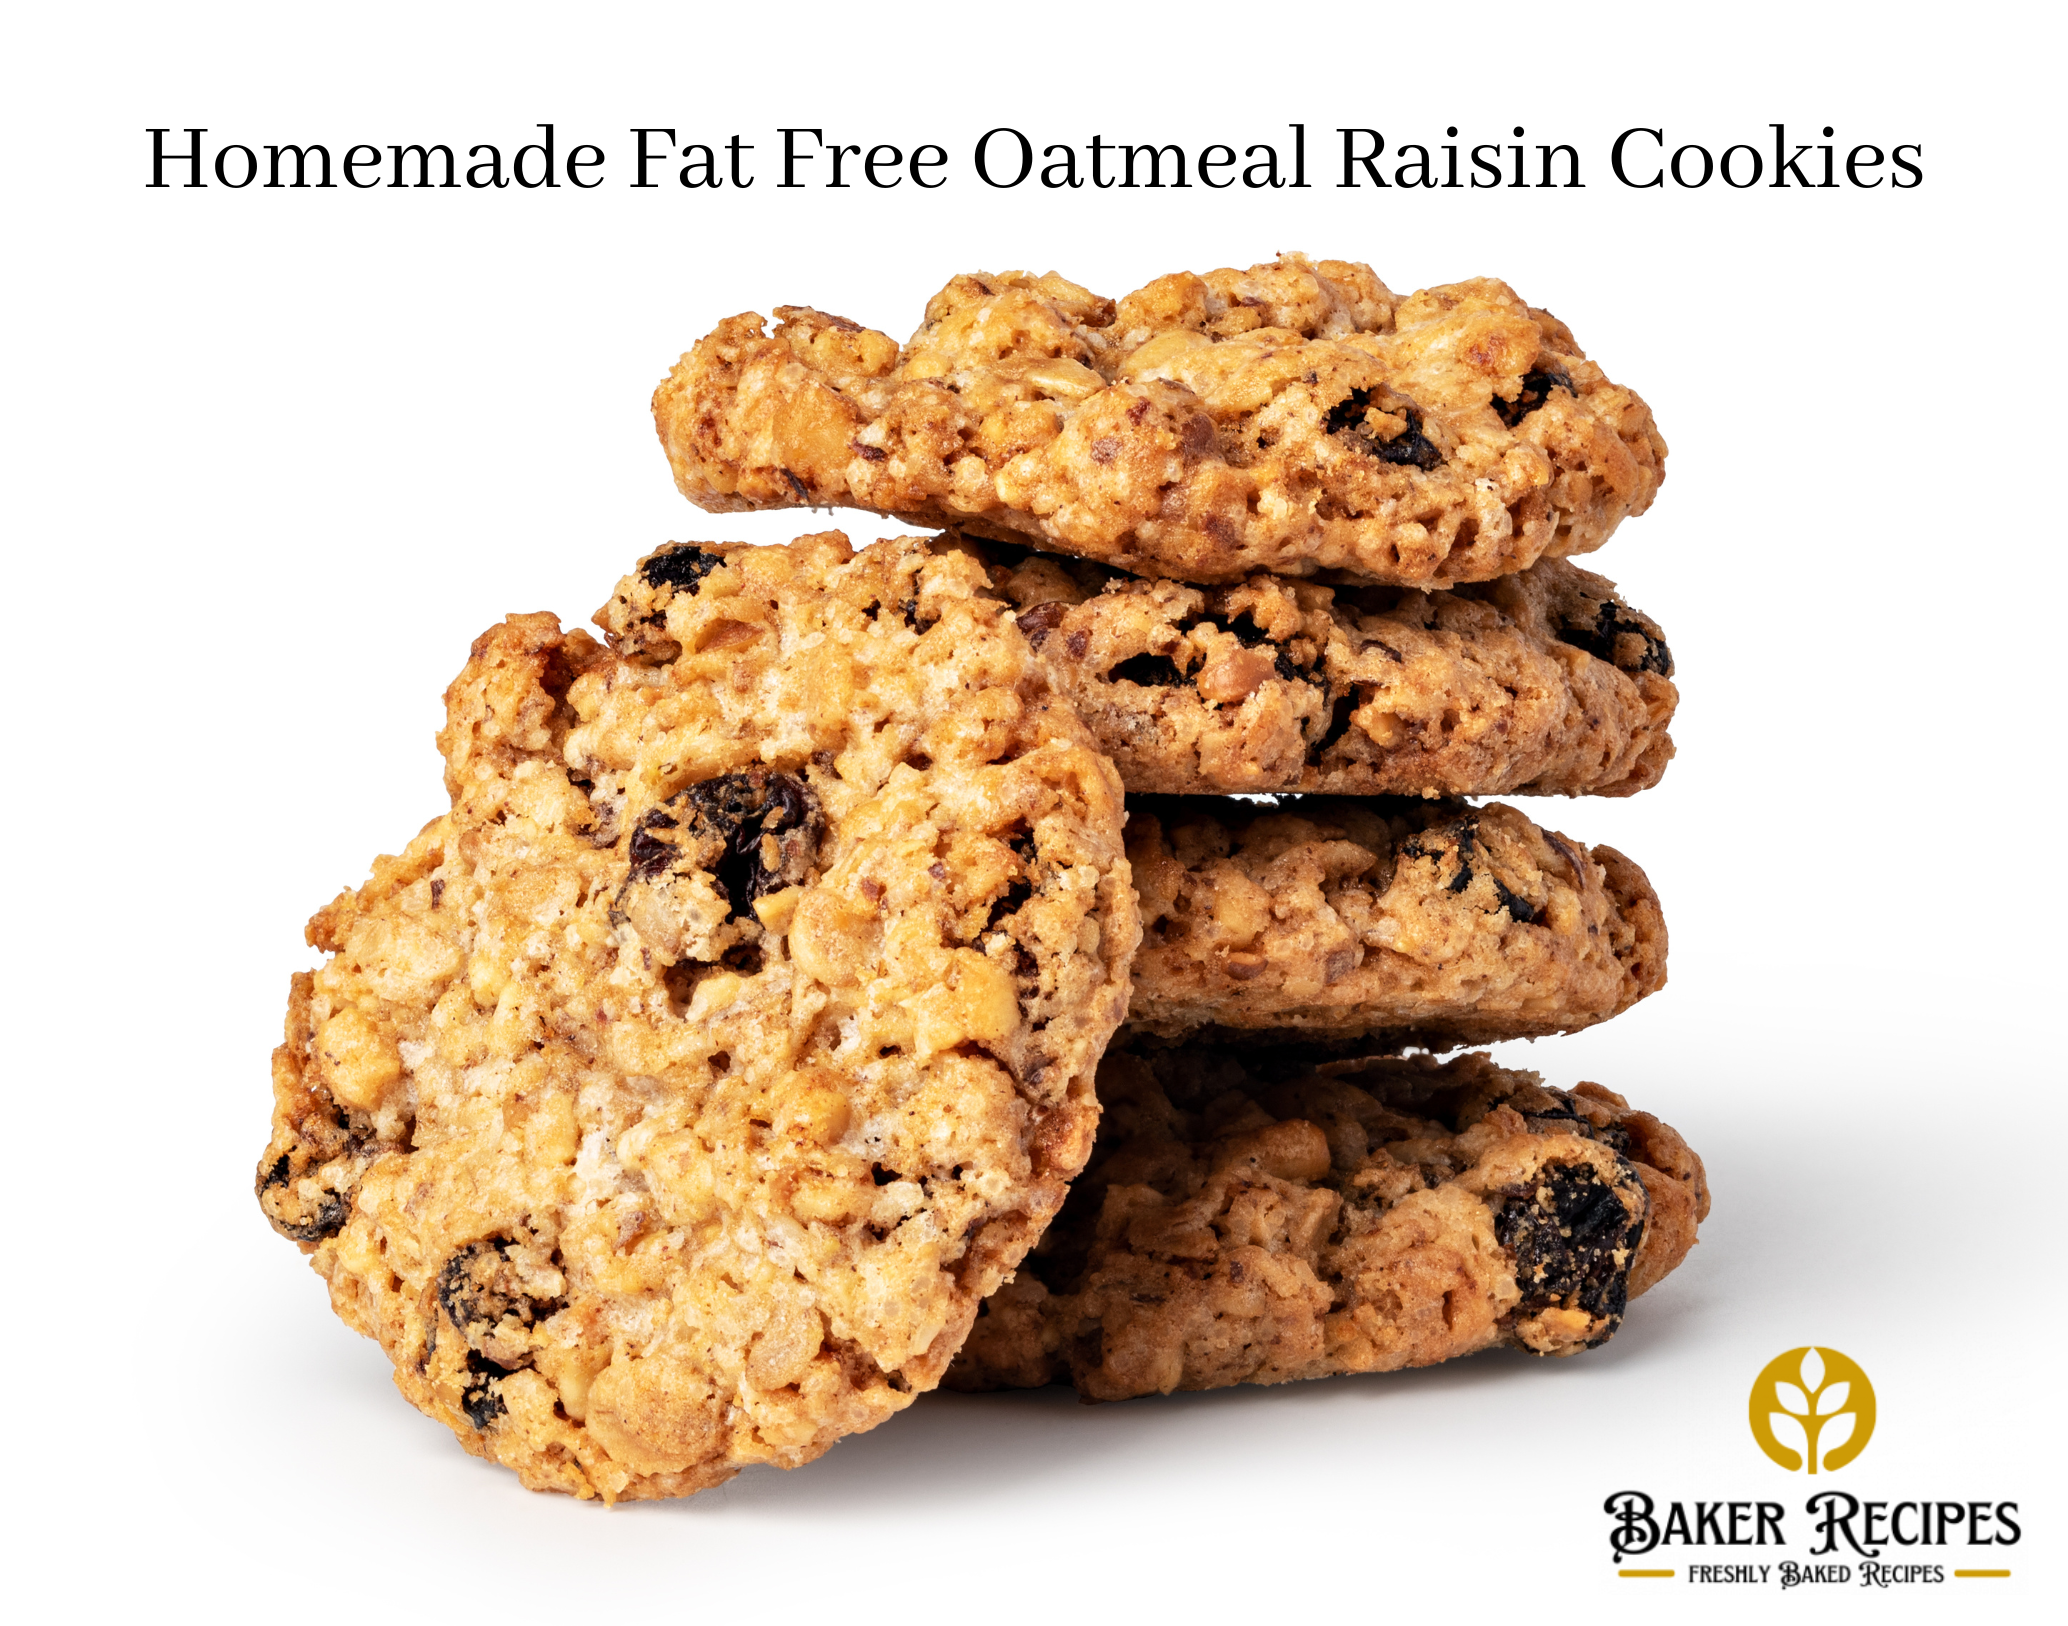 Homemade Fat Free Oatmeal Raisin Cookies